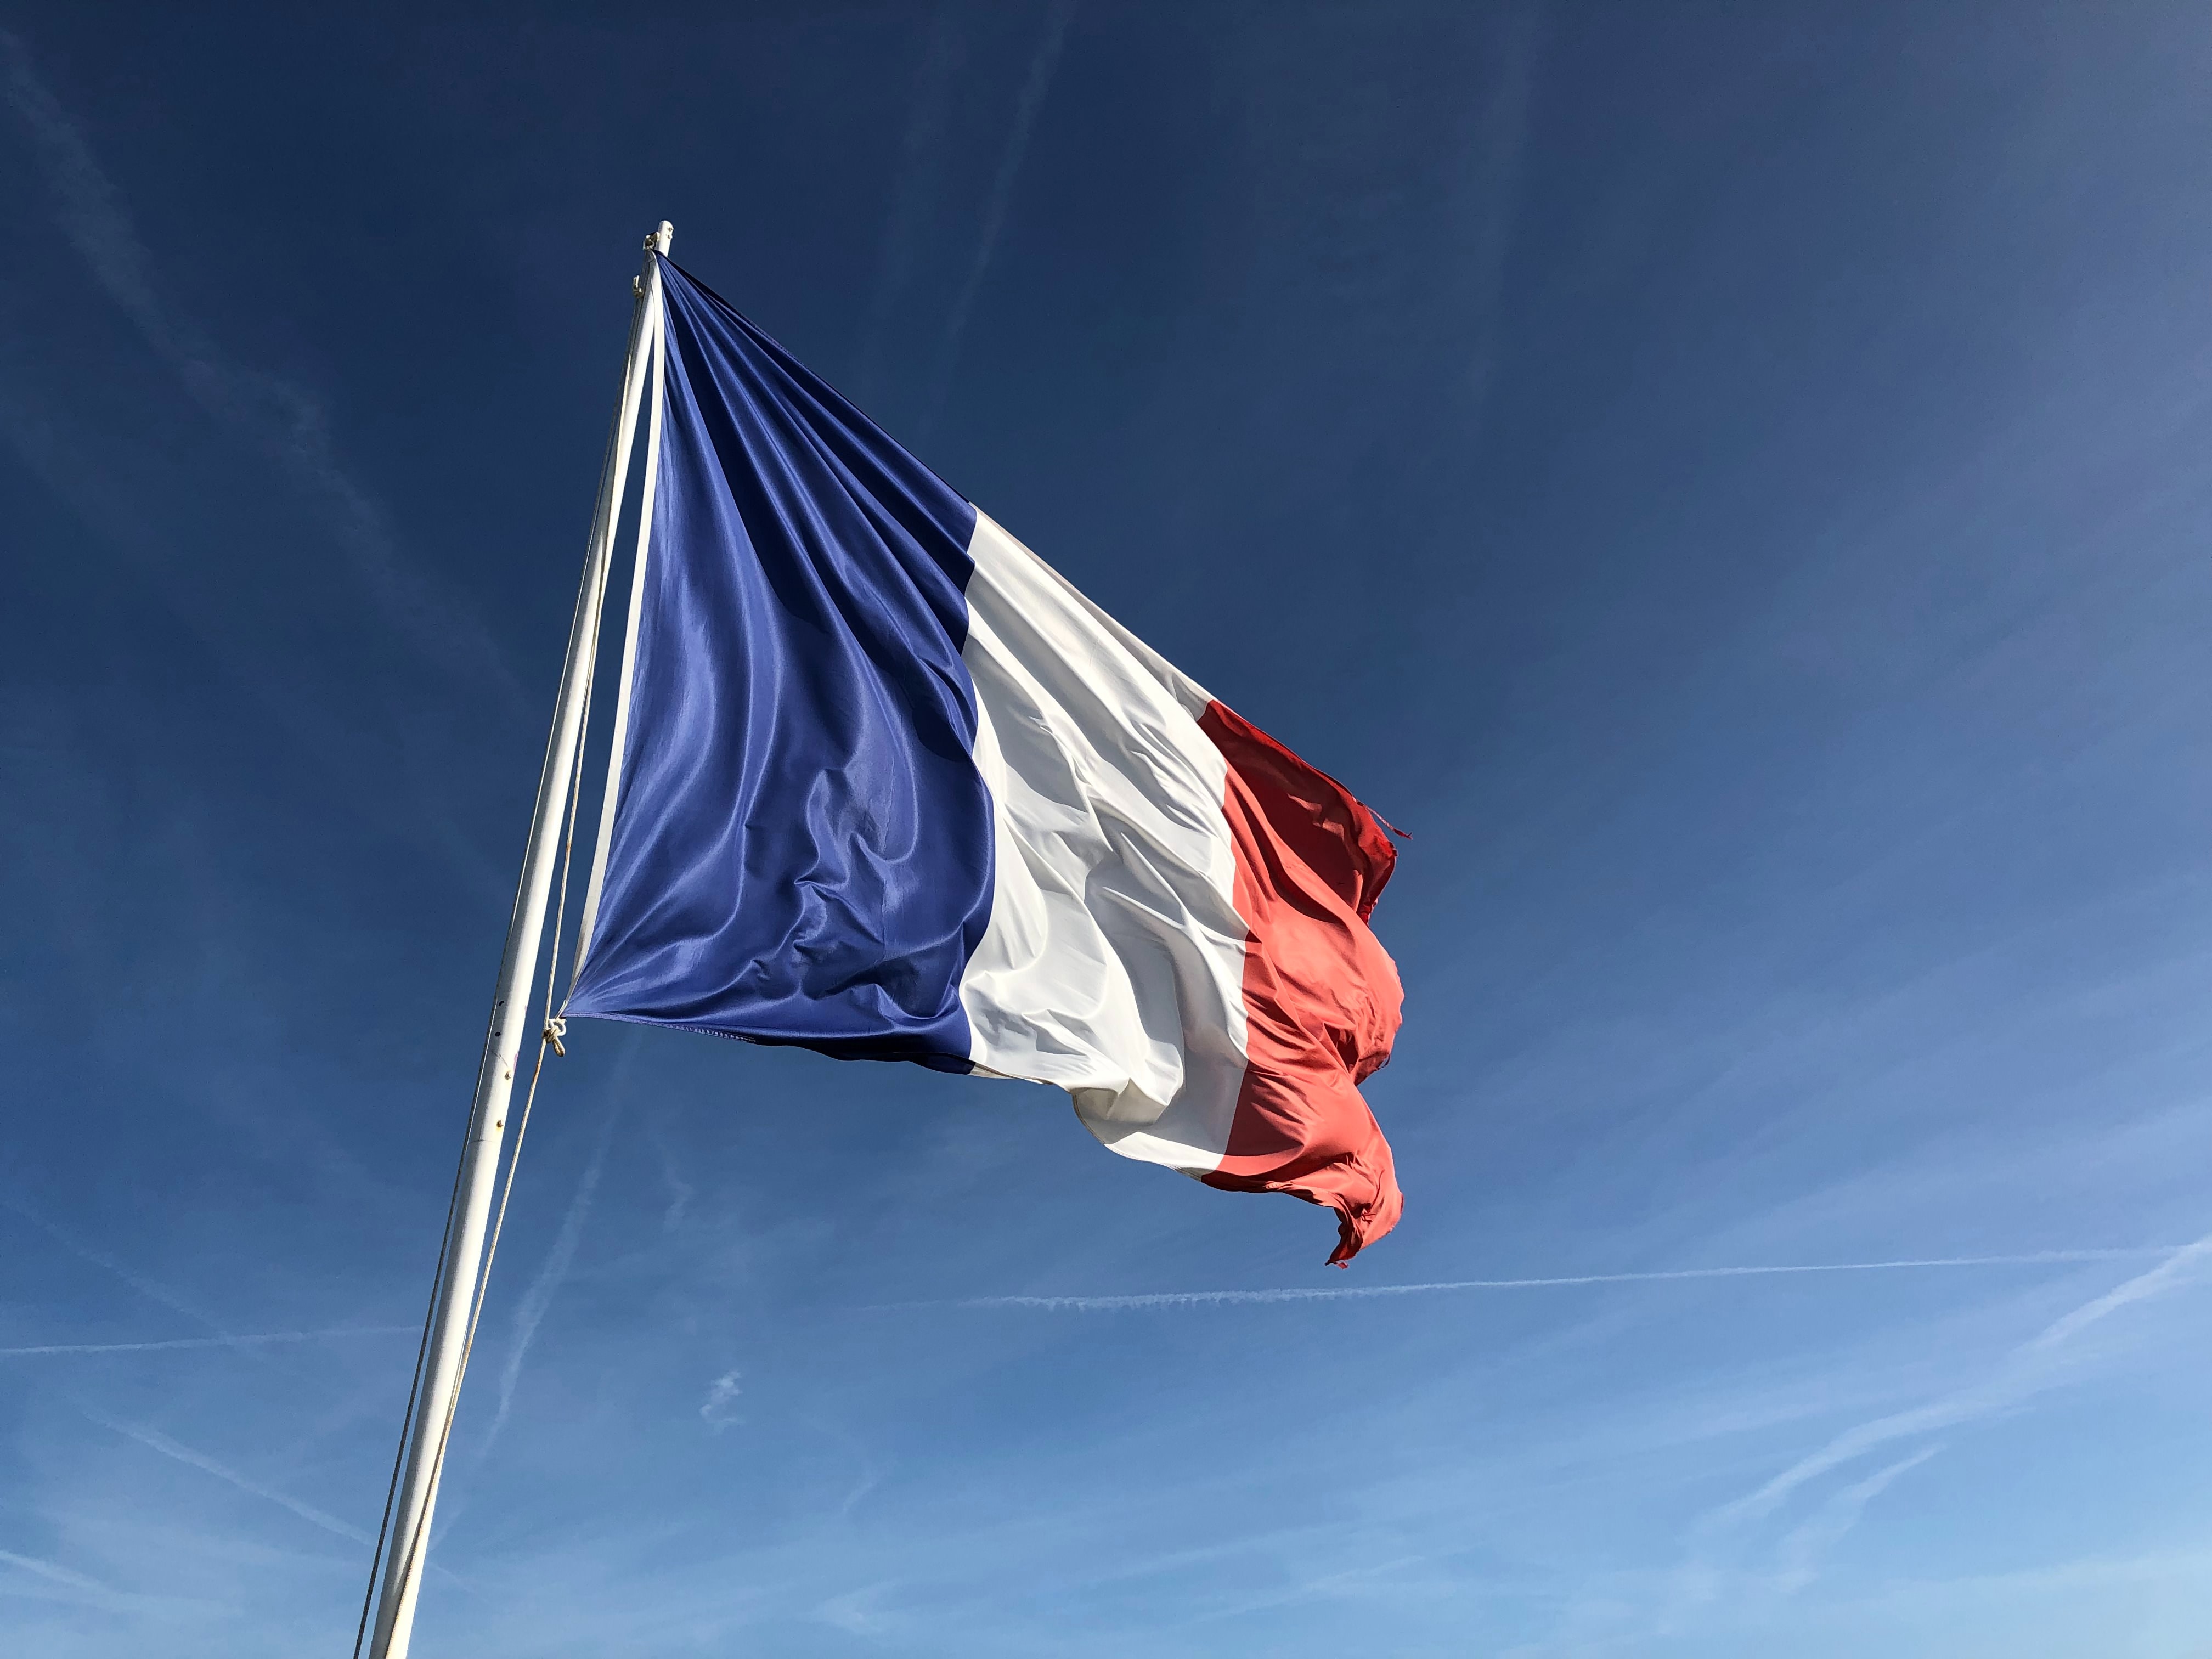 Fransa'da muhalefetin, hükümete karşı Meclise sunduğu gensoru önergesi reddedildi